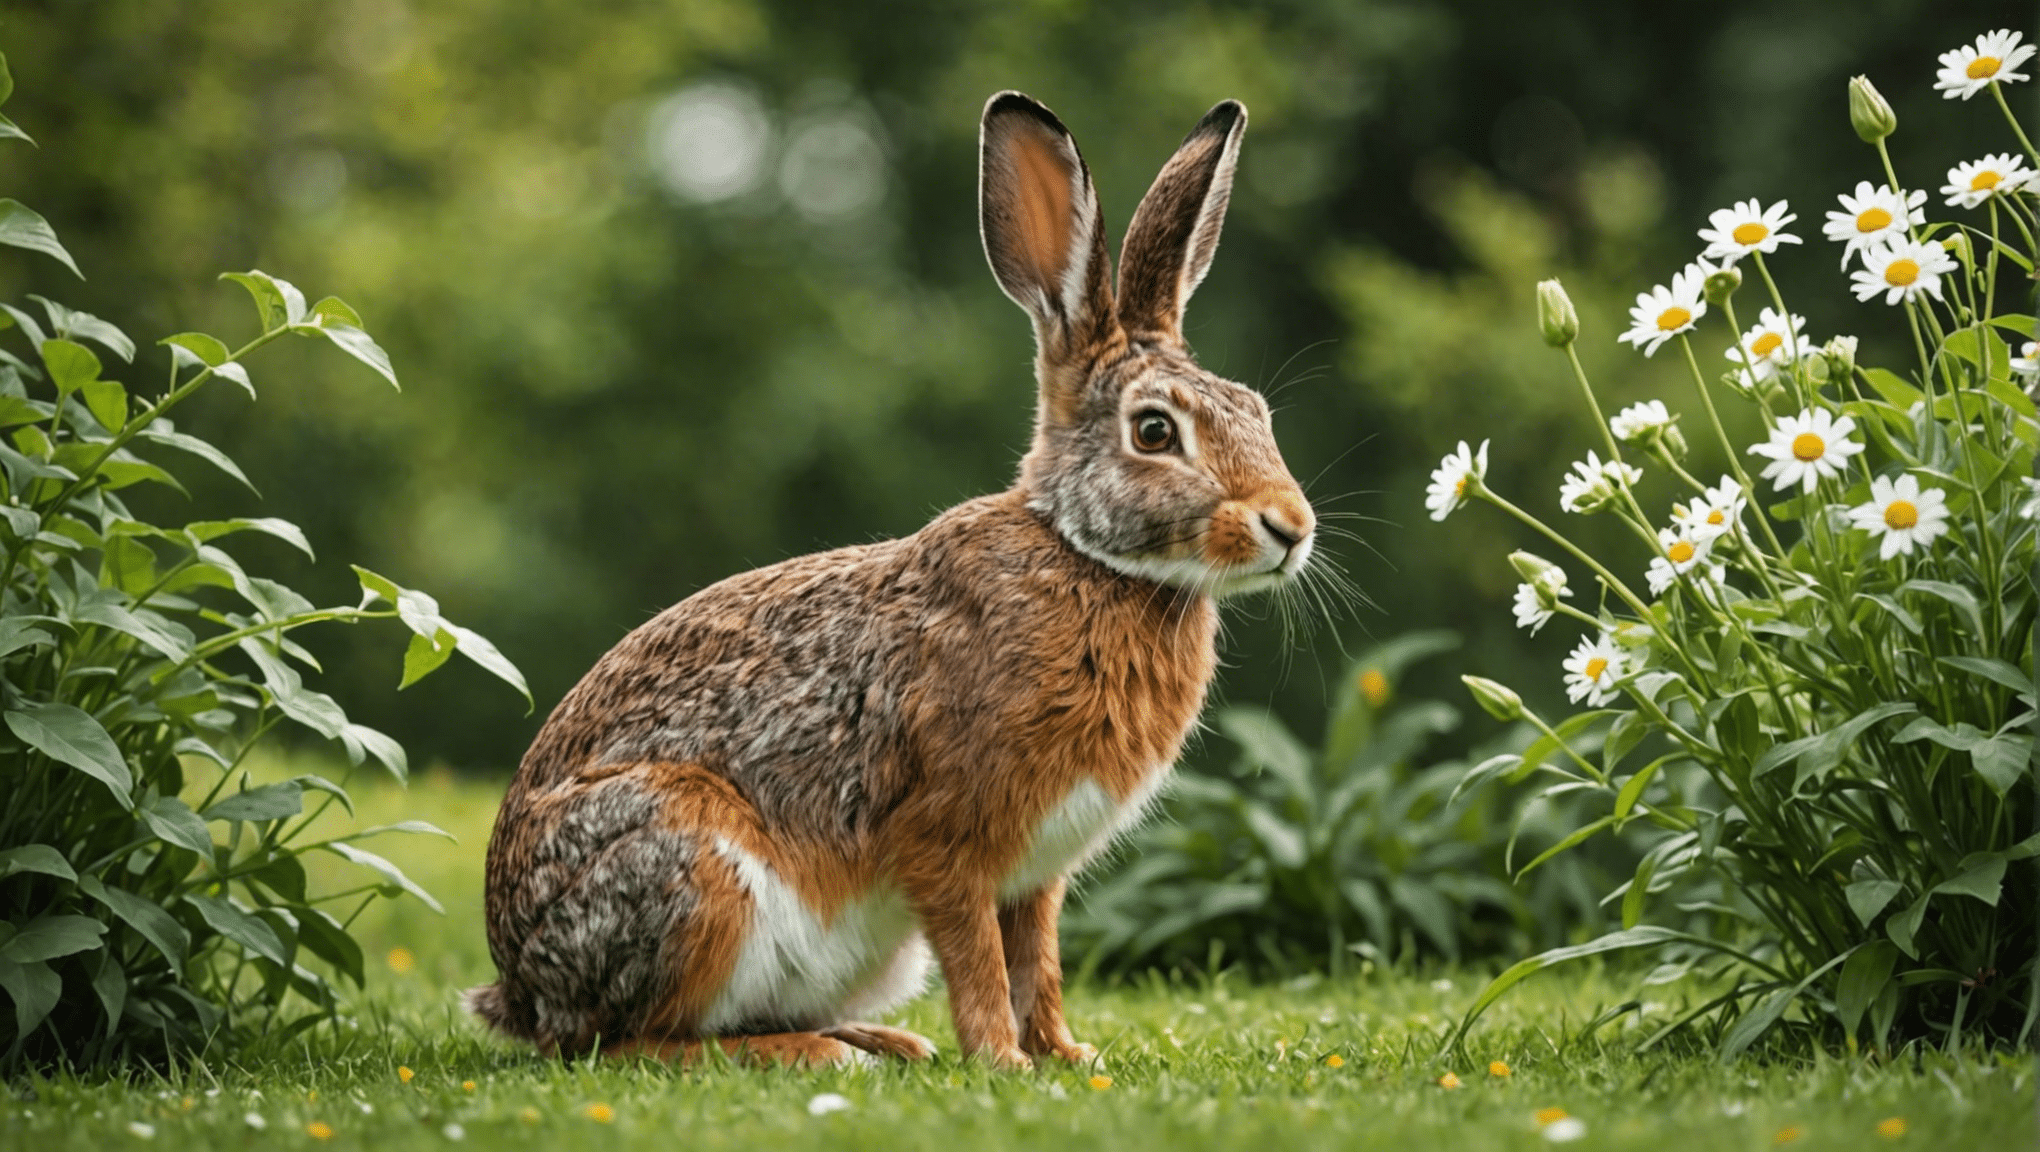 upptäck skillnaderna mellan harar och kaniner i denna insiktsfulla utforskning av deras unika egenskaper och beteenden.